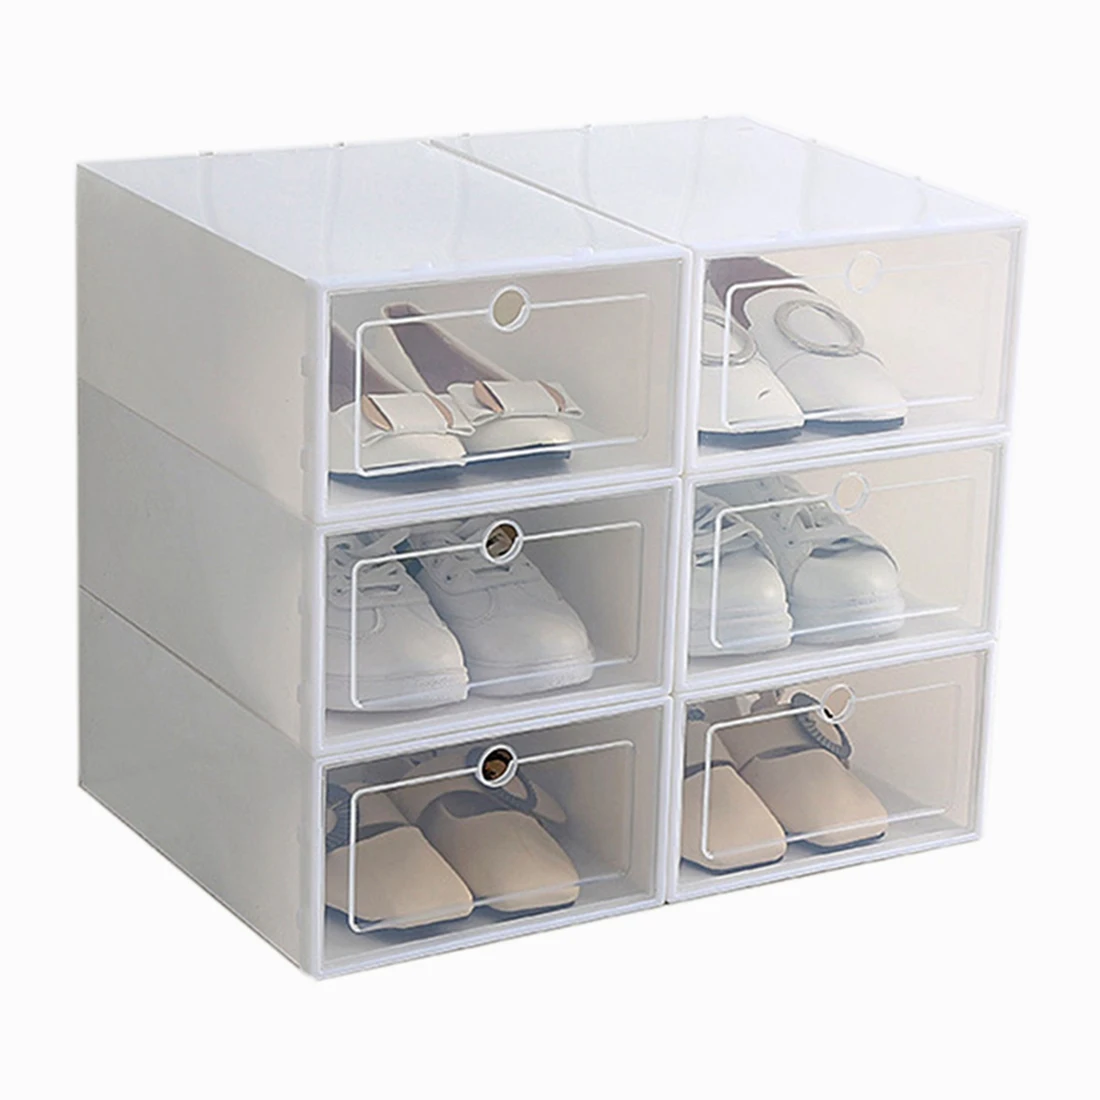 

Коробка для обуви карамельного цвета, прозрачная пластиковая коробка для хранения обуви, ящик для хранения обуви Прямоугольный белый, 6 шт.